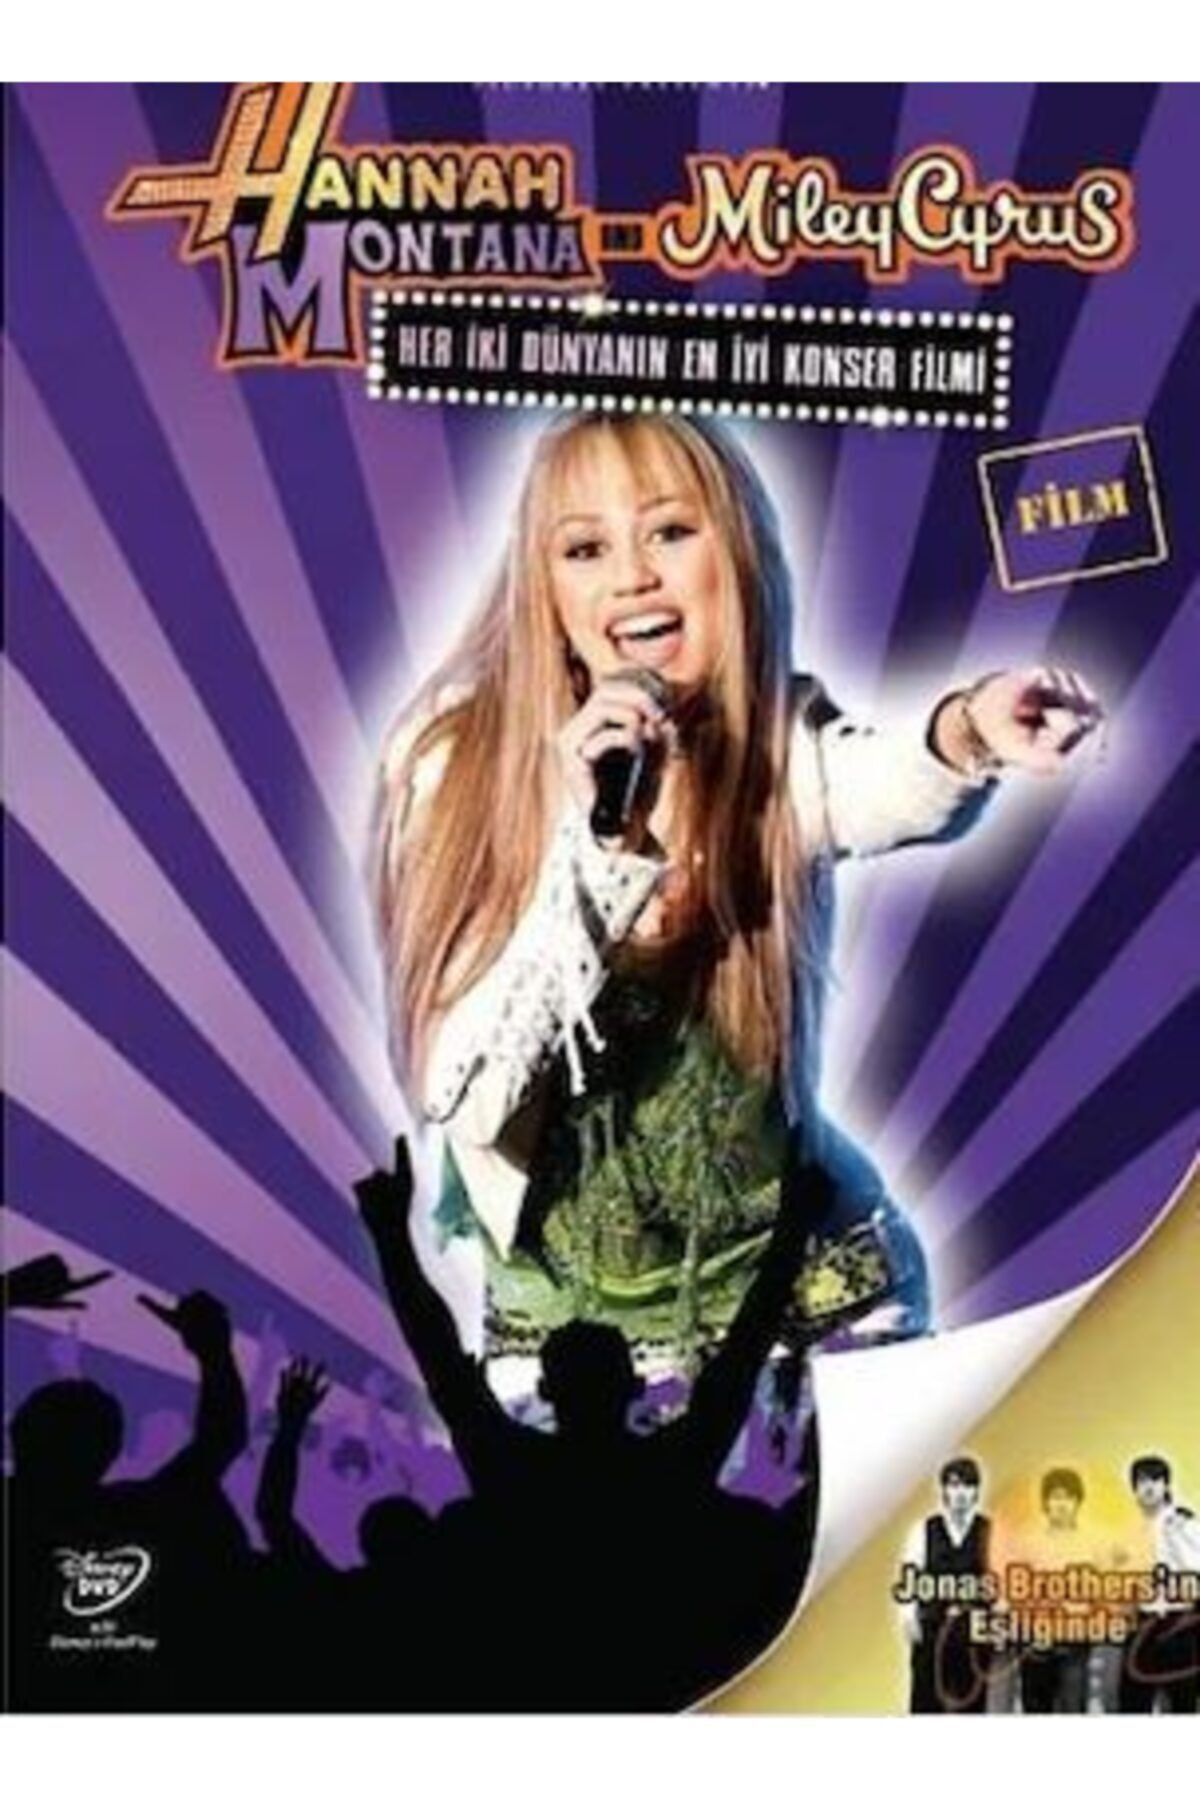 Genel Markalar Hannah Montana Ve Miley Cyrus: Her Iki Dünyanın En Iyi Konser Filmi Dvd